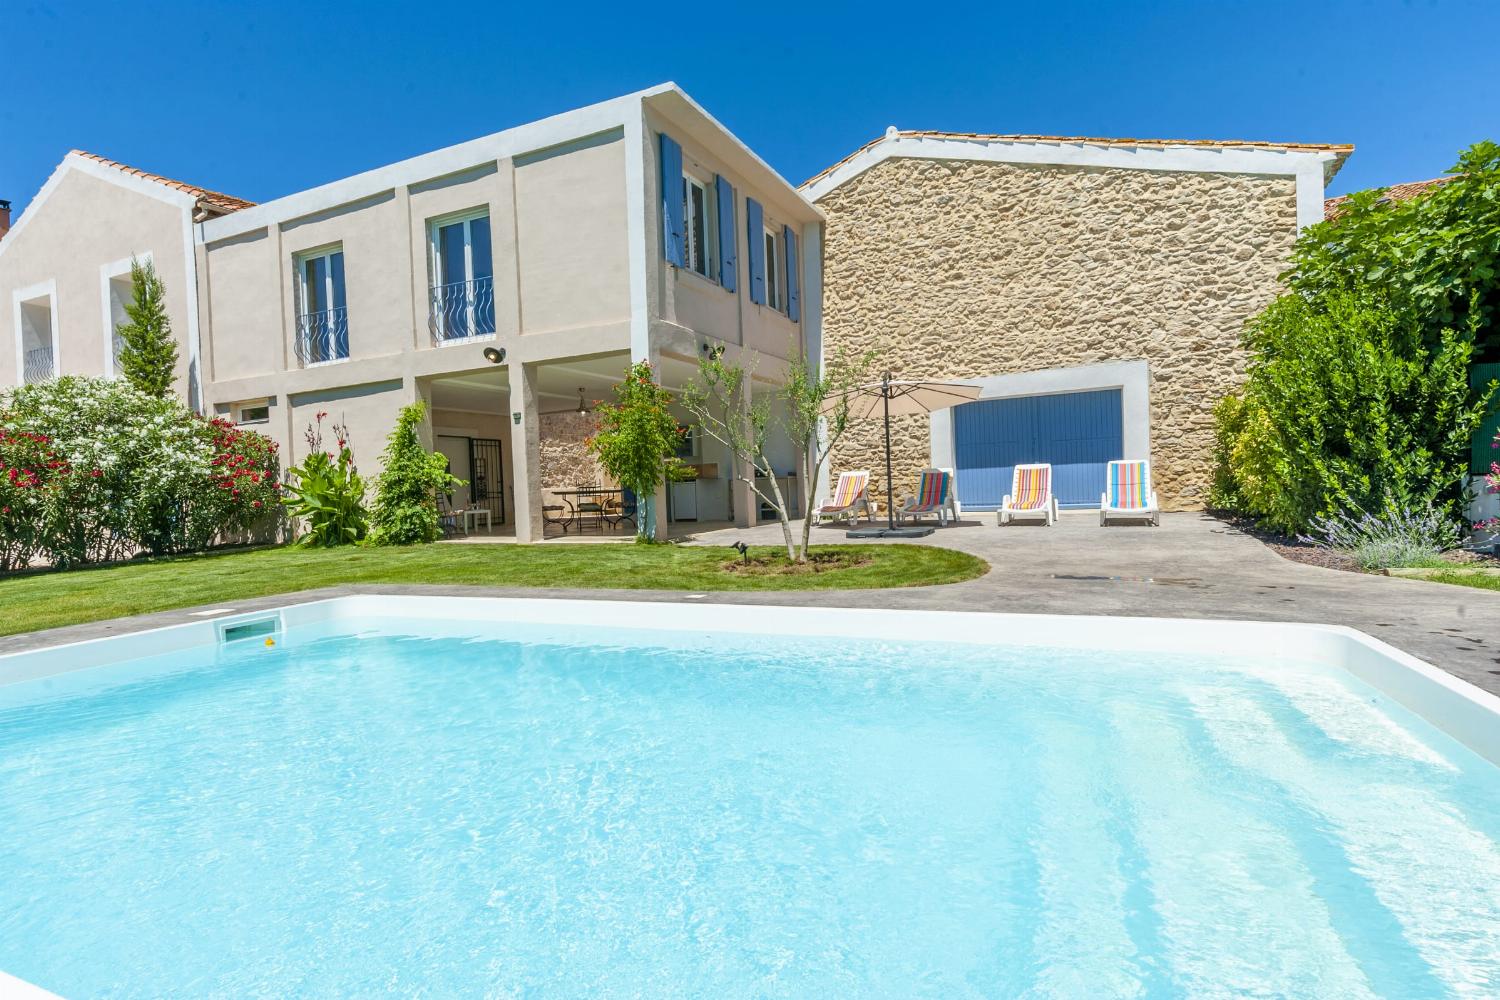 Maison de vacances dans le sud de la France avec piscine priveé